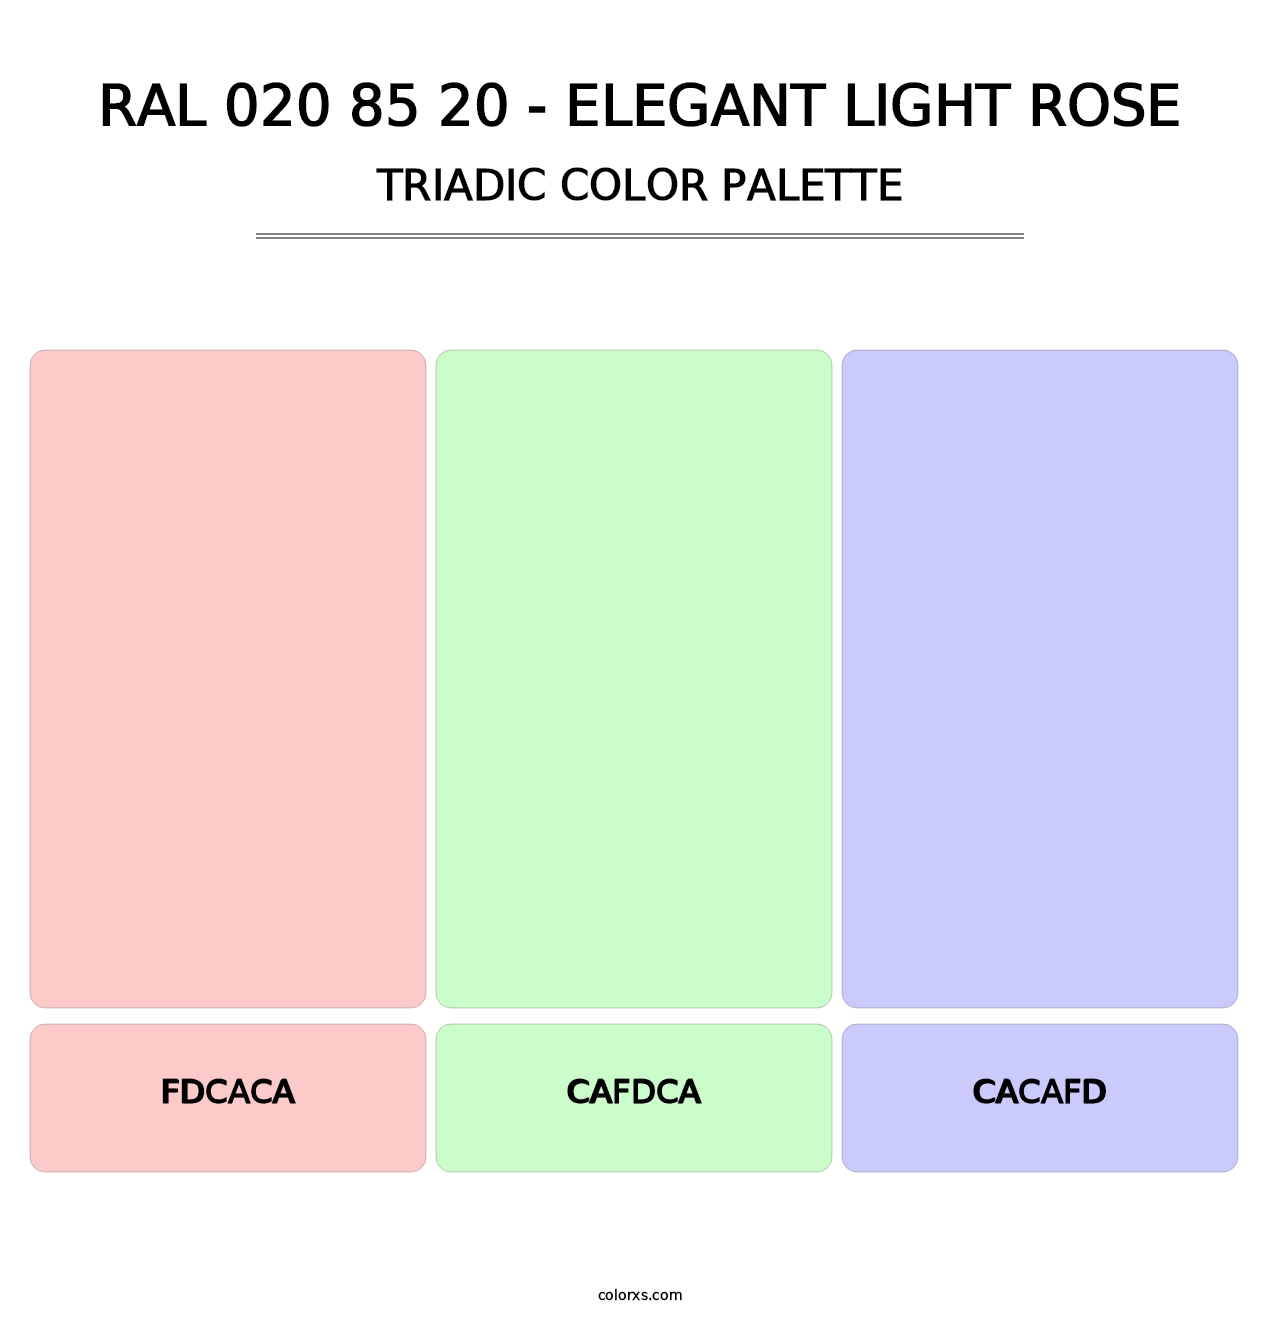 RAL 020 85 20 - Elegant Light Rose - Triadic Color Palette